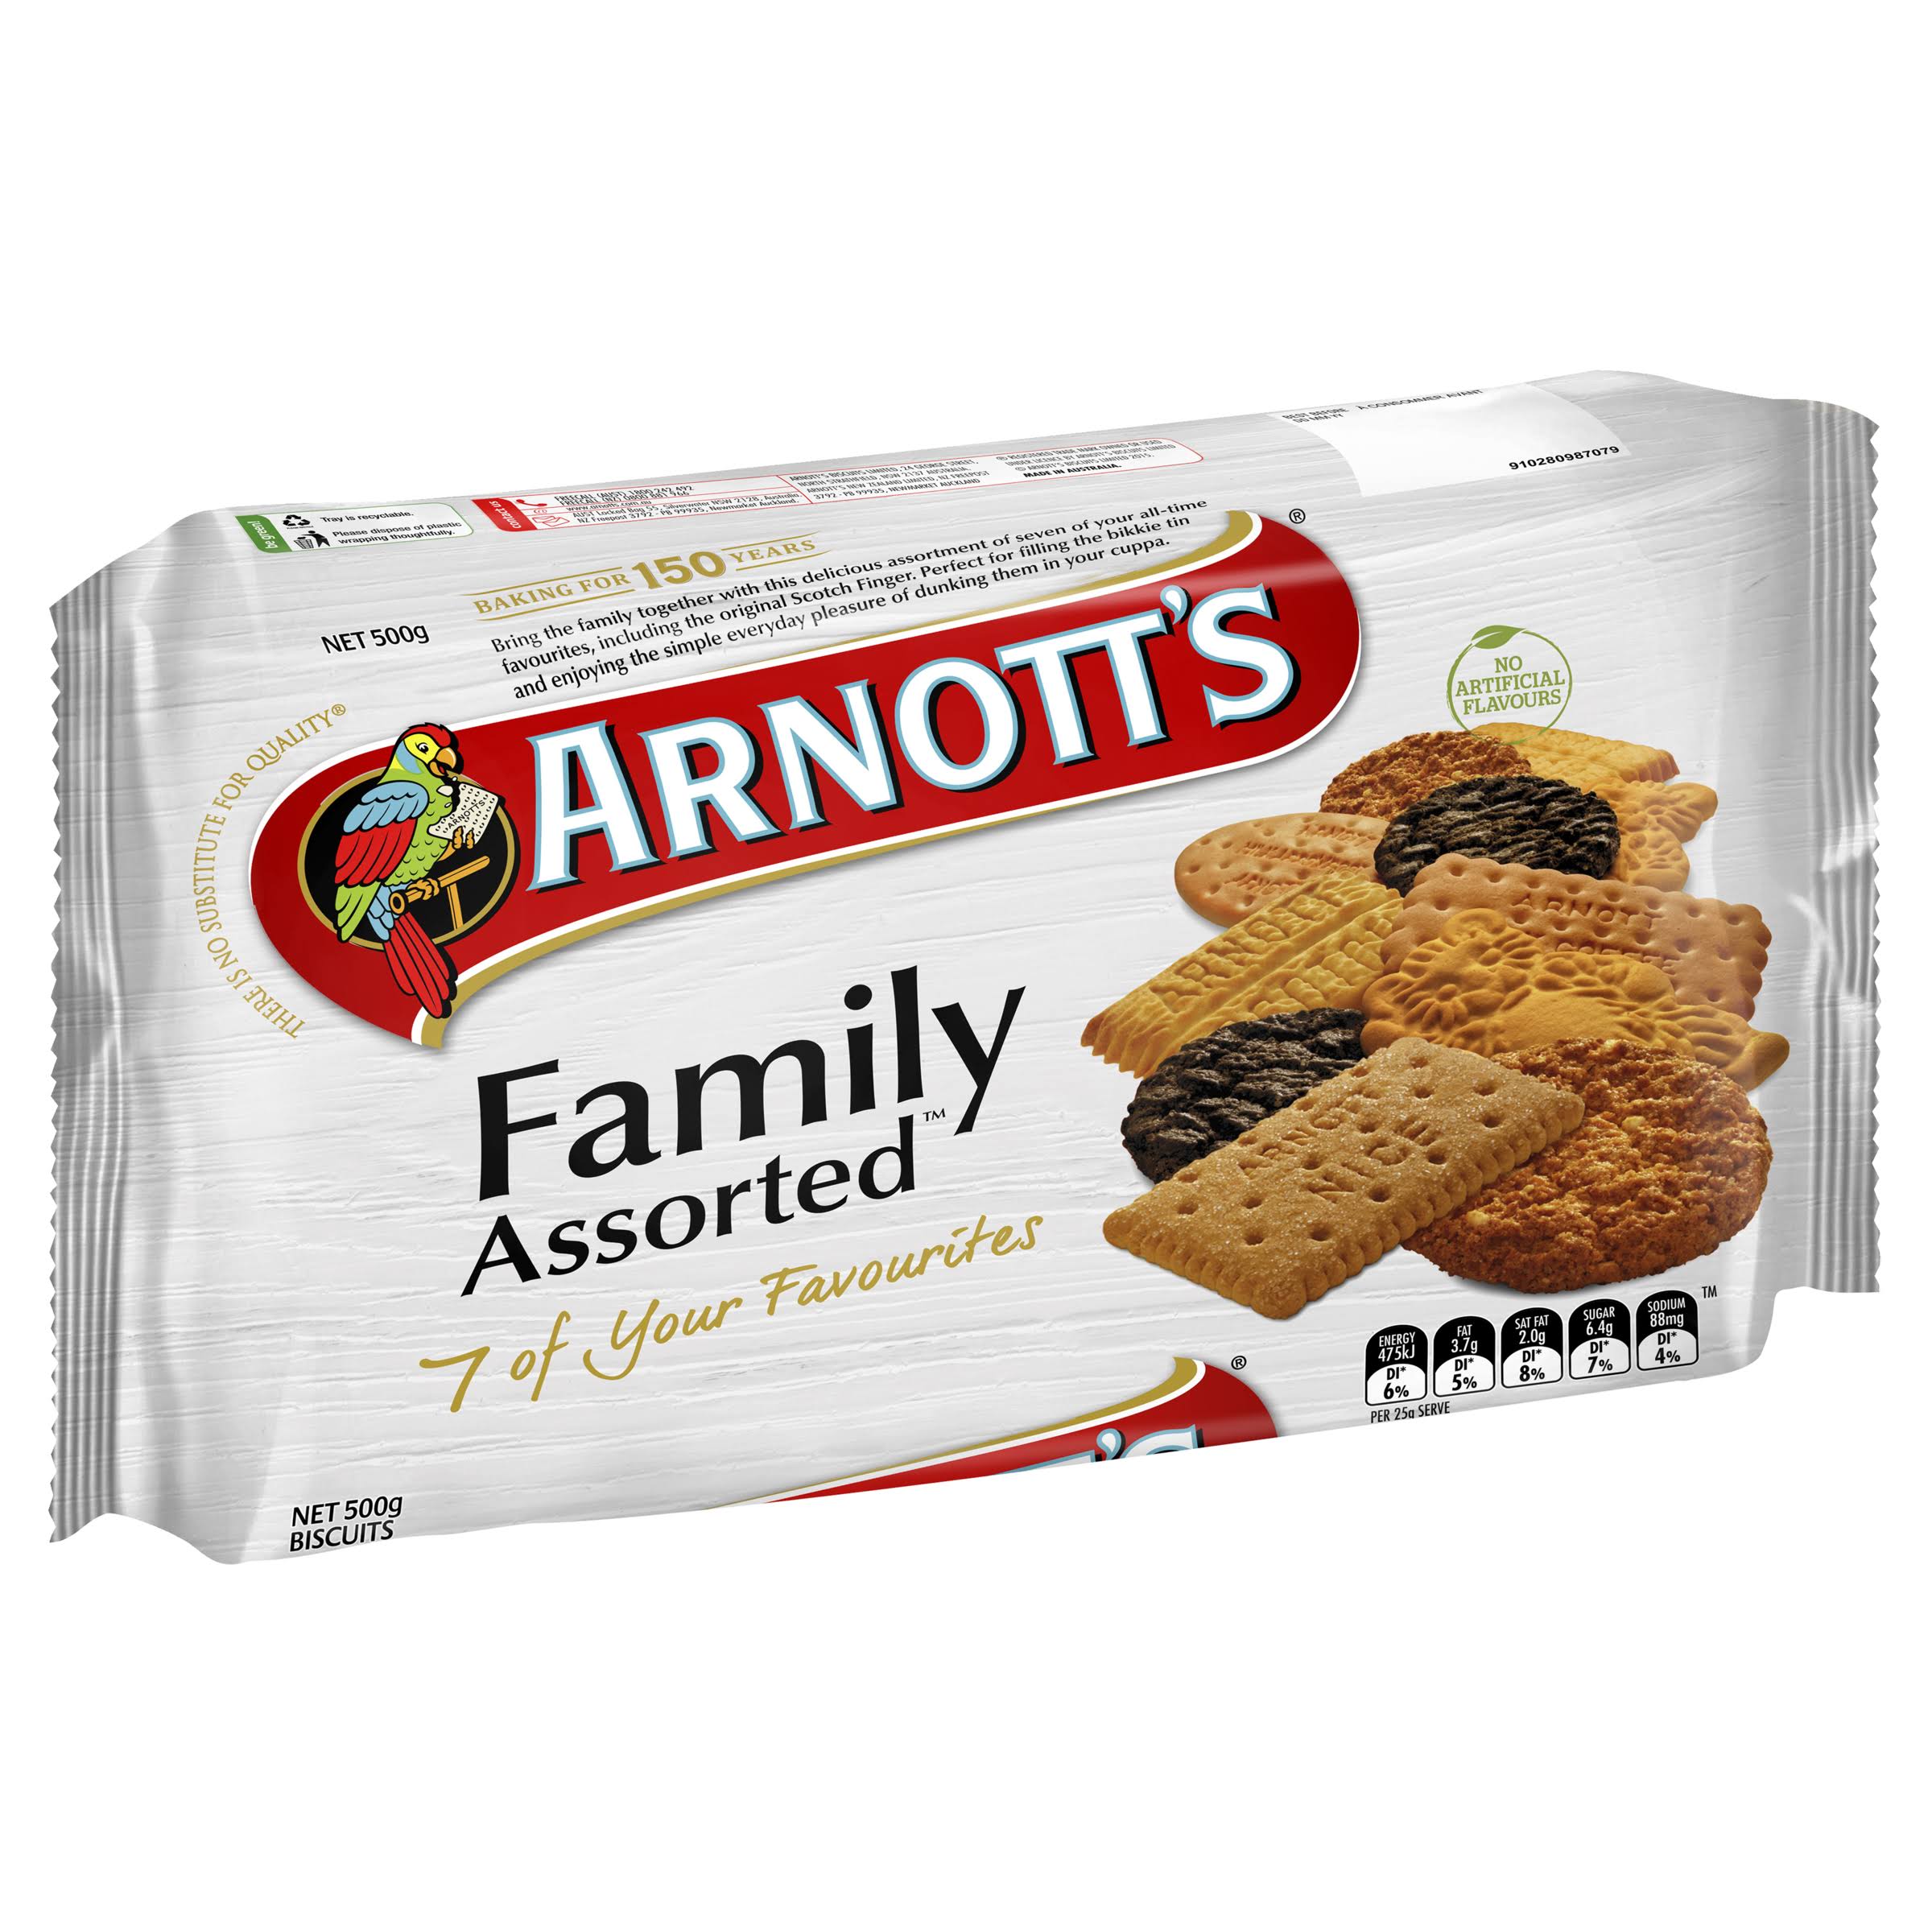 Arnotts Family Assorted 500g